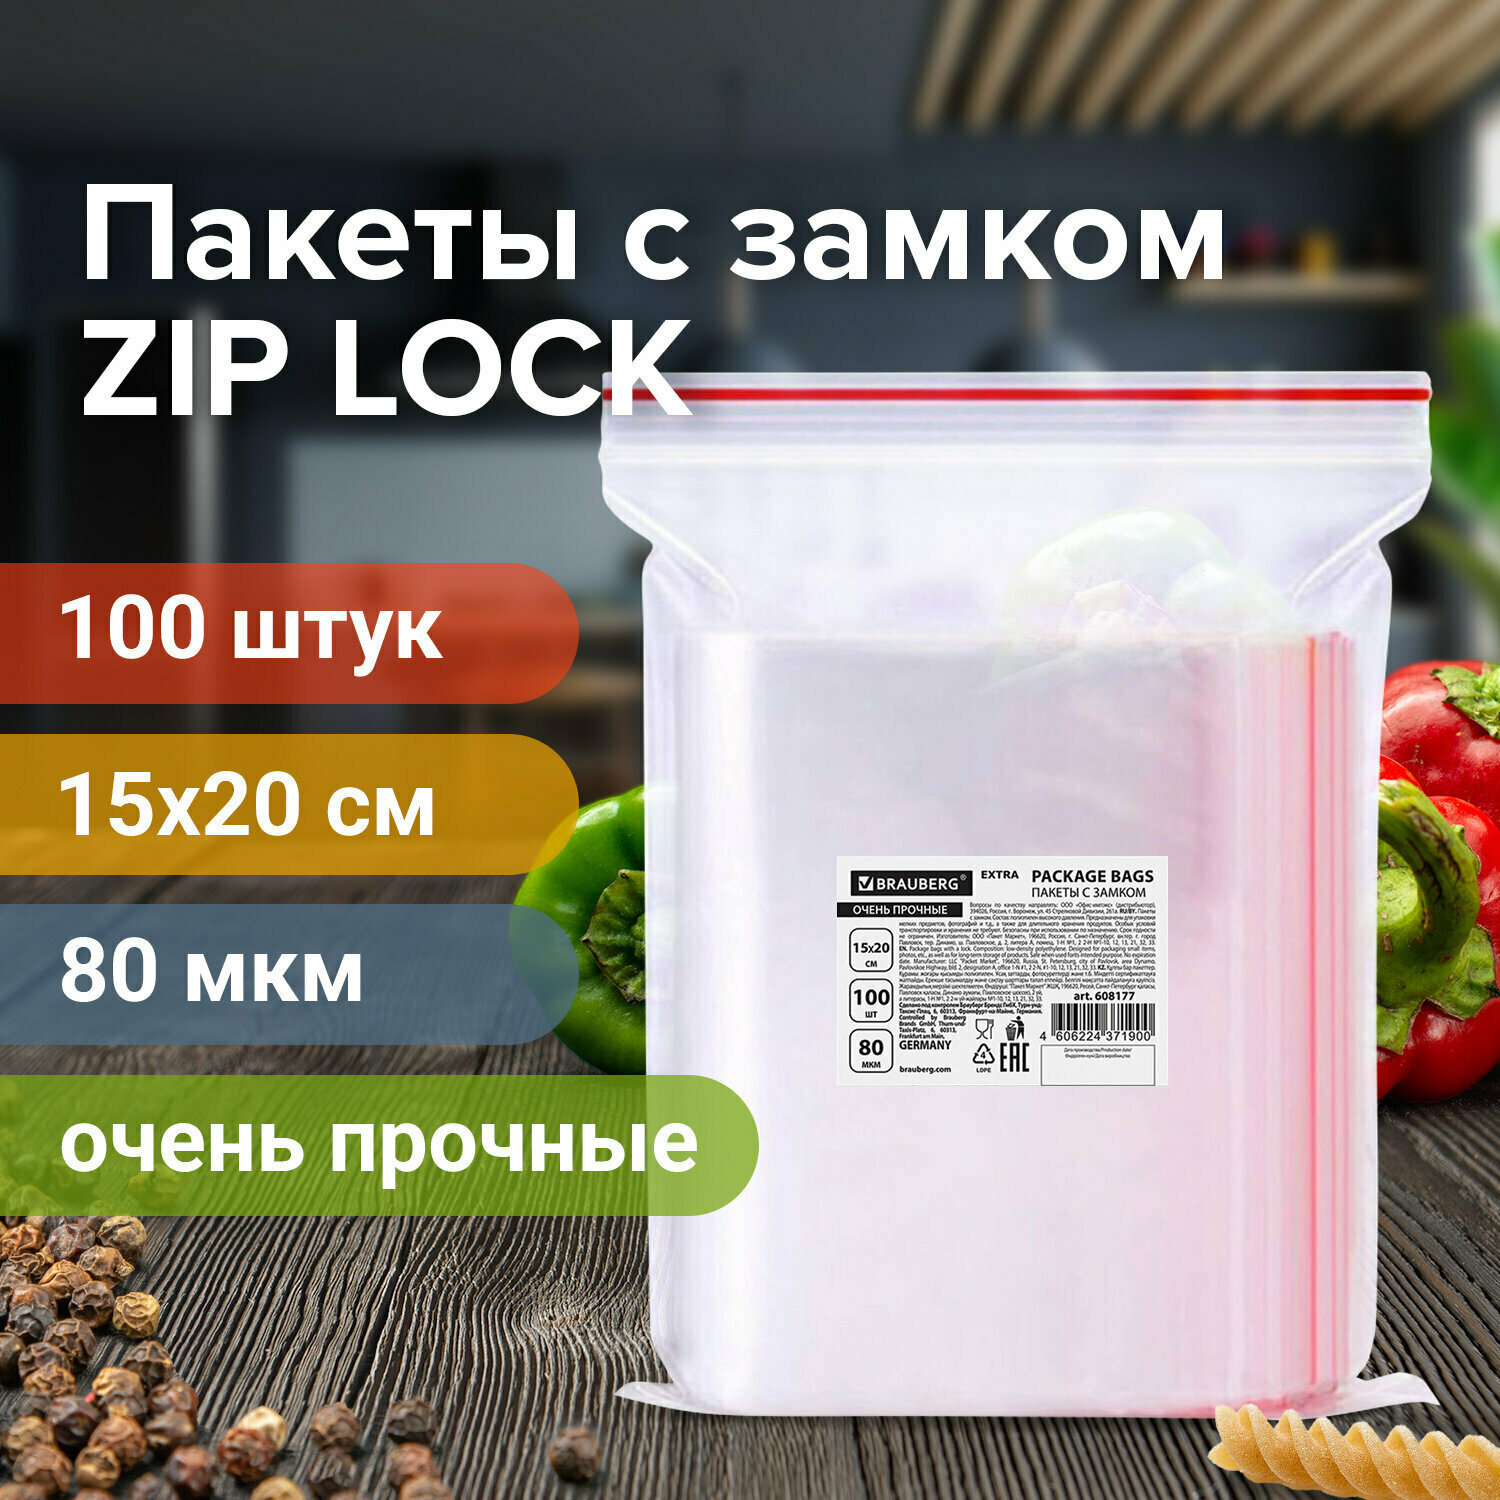 Пакеты ZIP LOCK "зиплок" очень прочные, Комплект - 3 шт. - фотография № 1